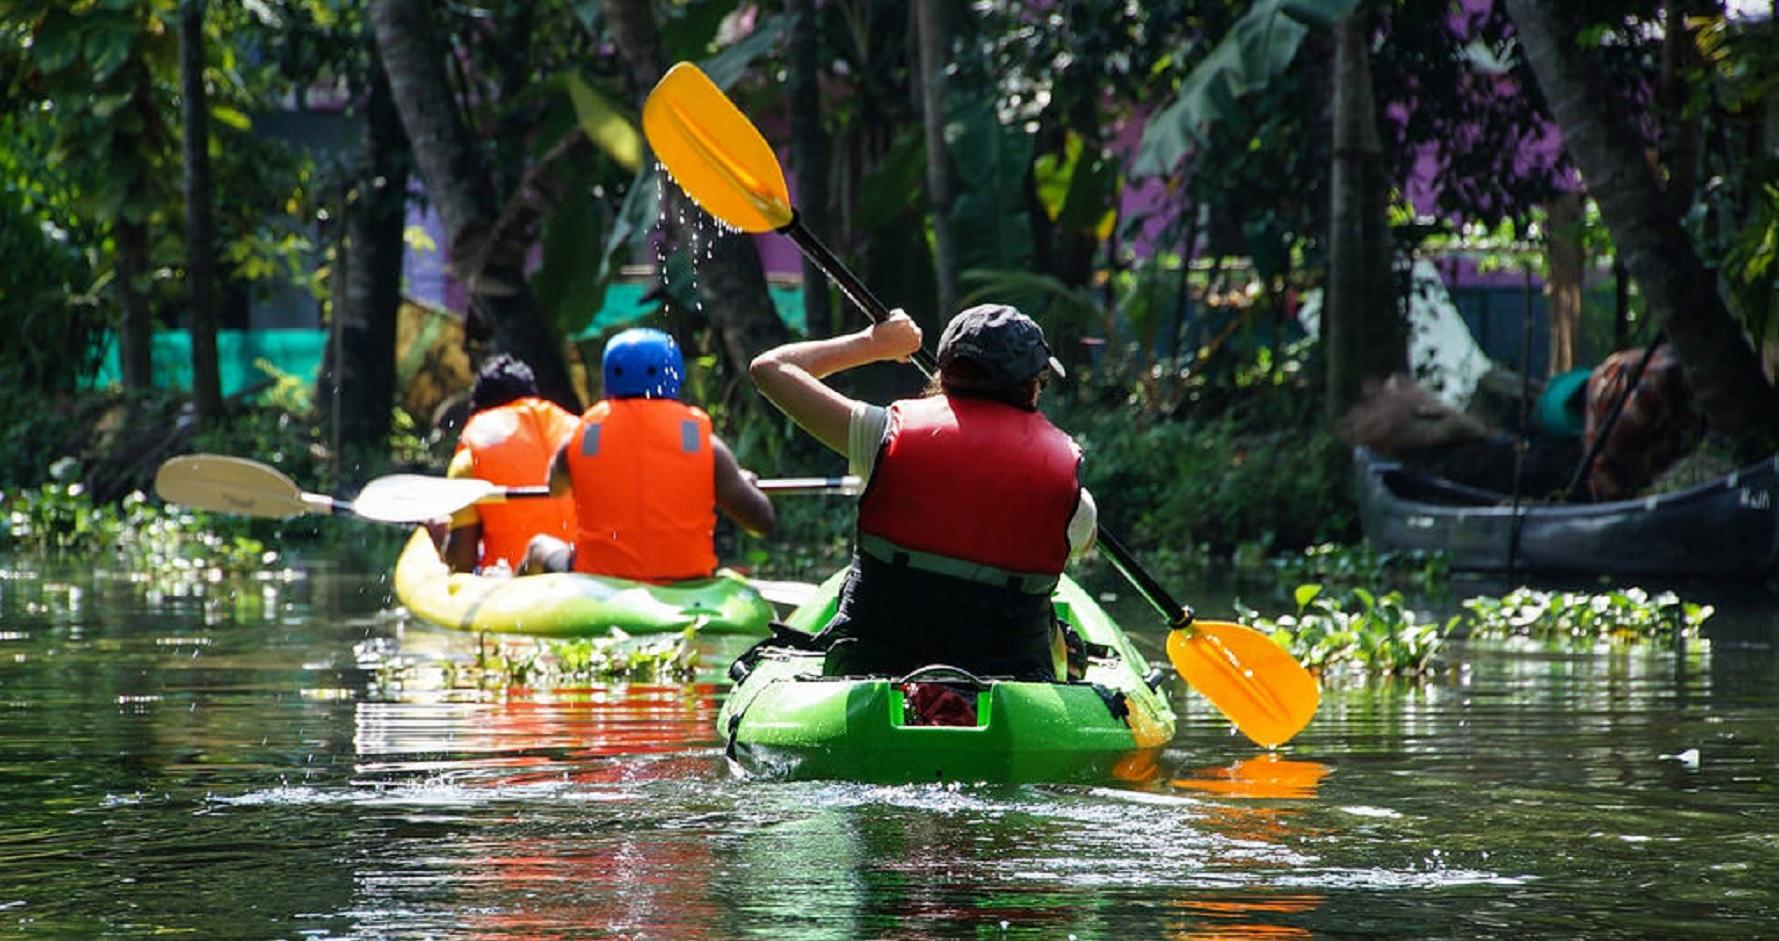 Kerala Kayaking